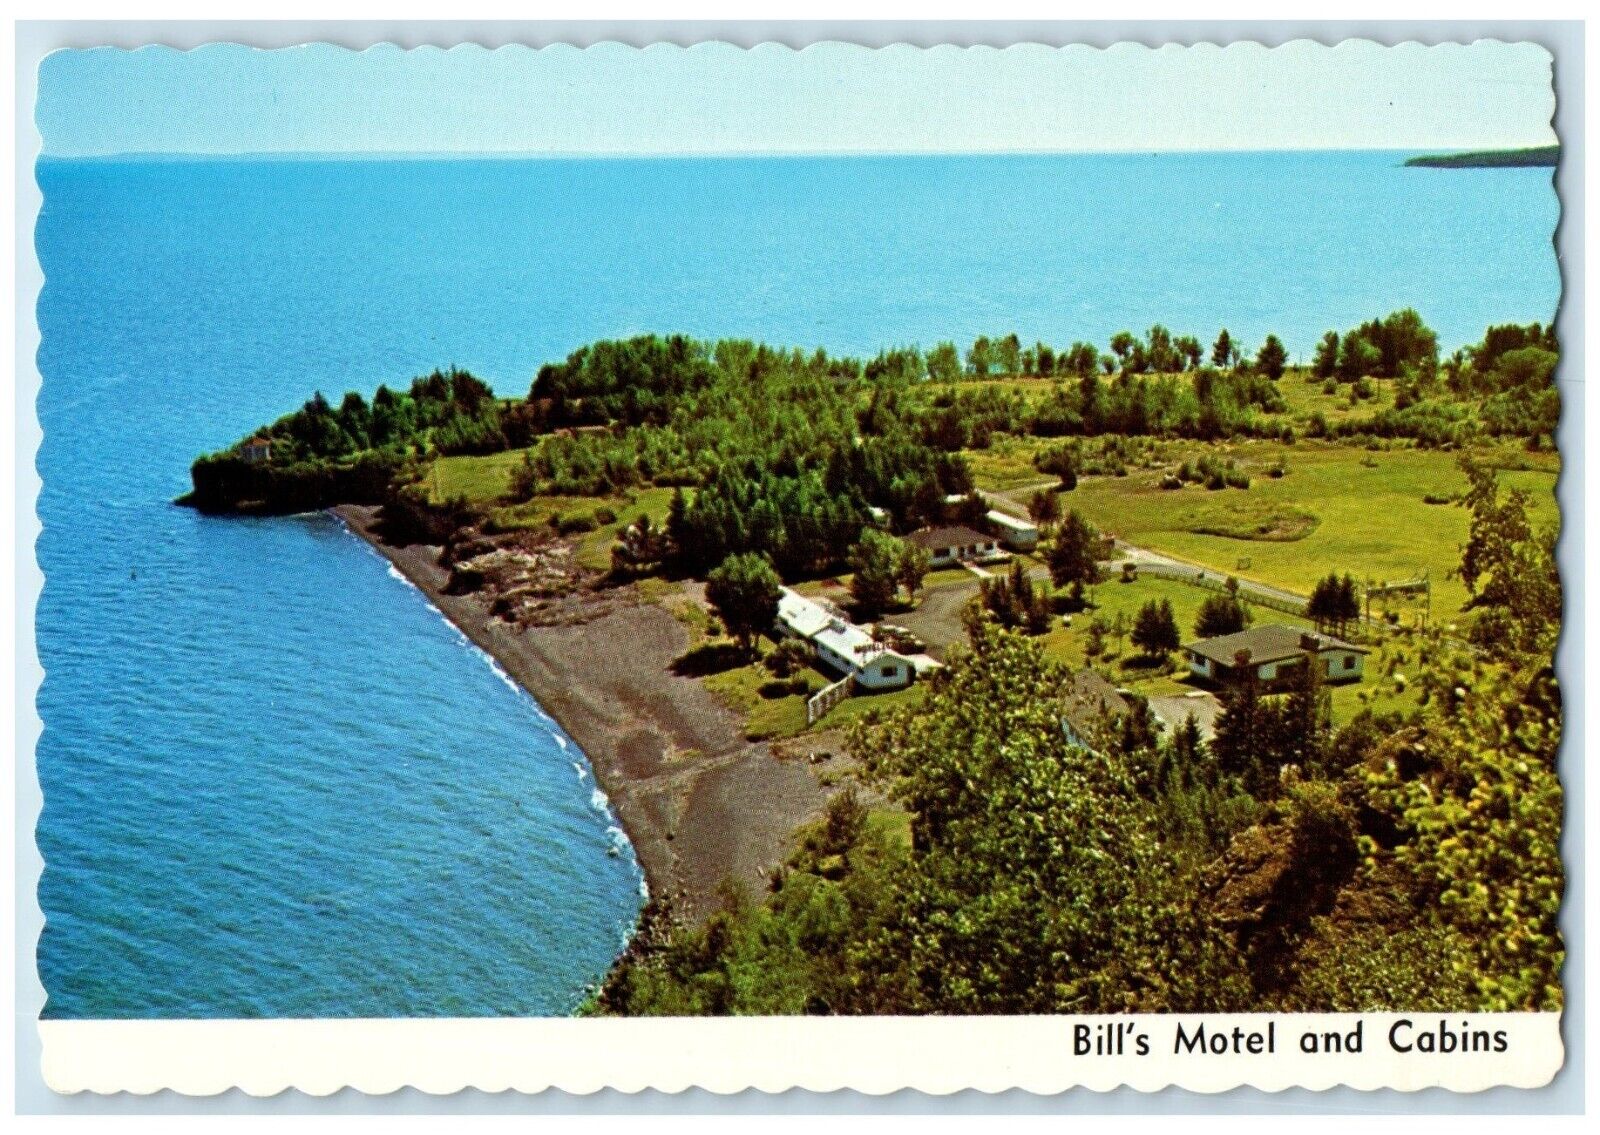 1960 Bill's Motel Cabins Sleep Slap Waves Two Harbors Minnesota Vintage Postcard